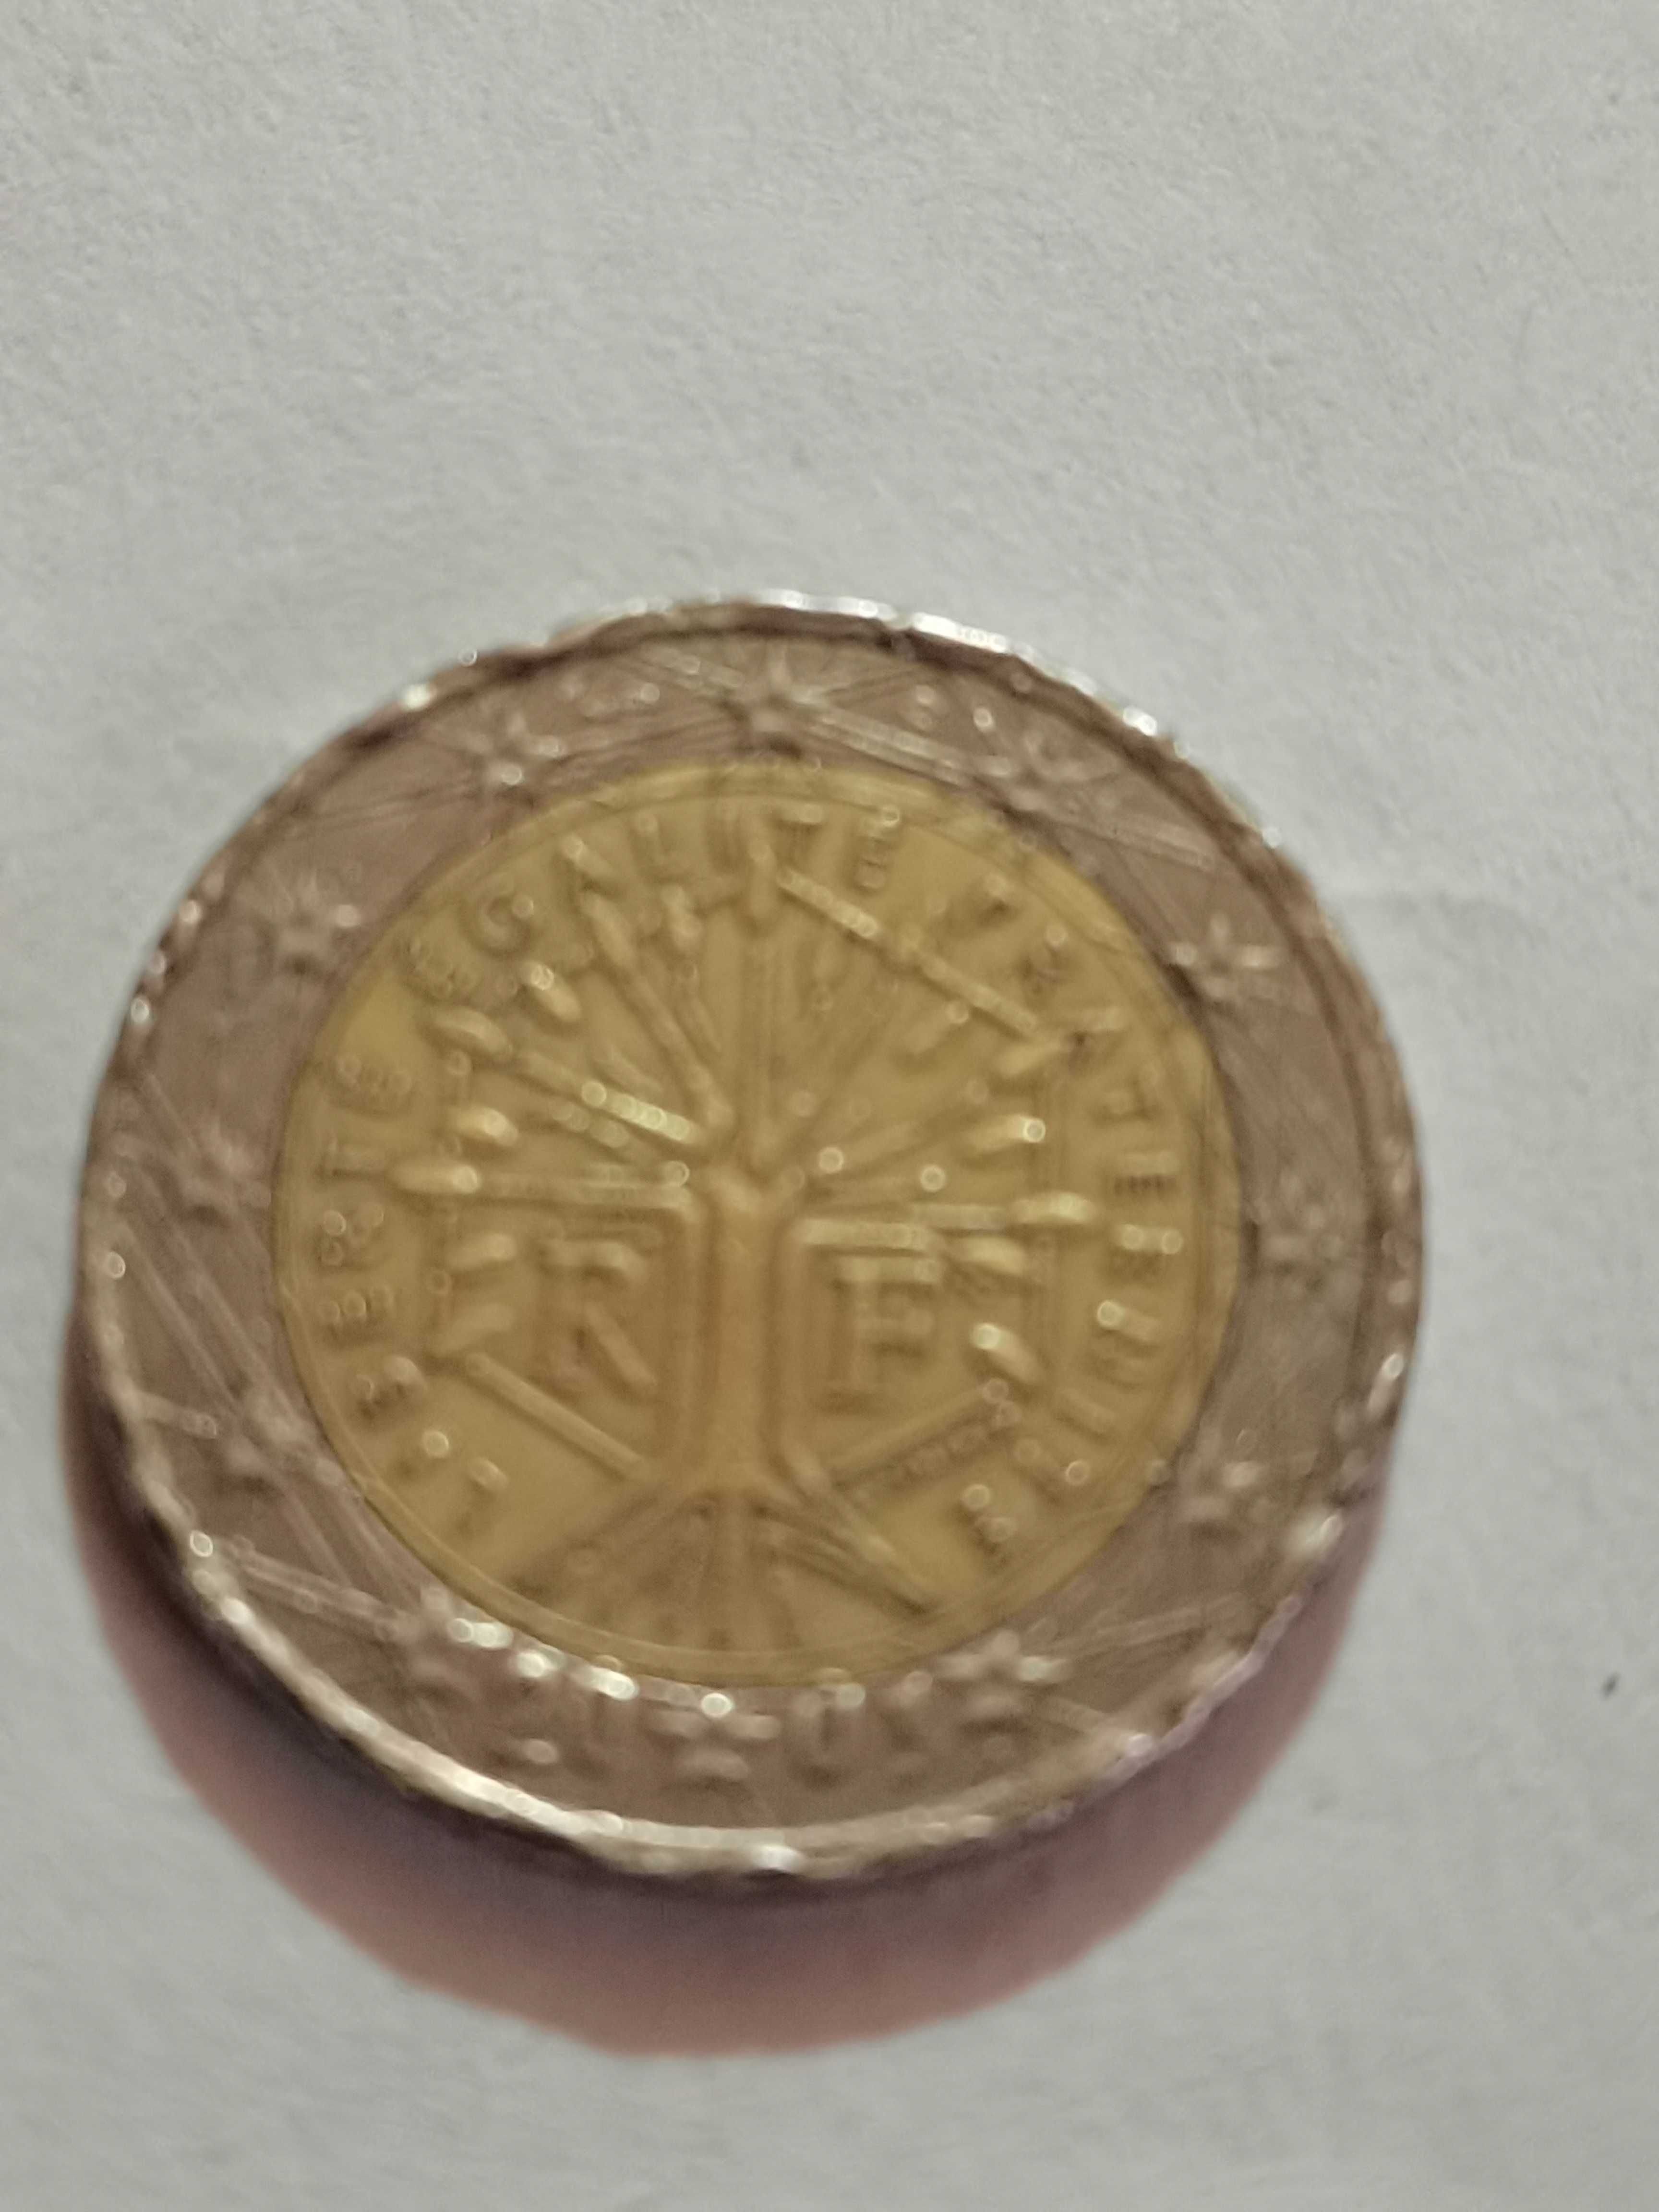 Monede de colecție